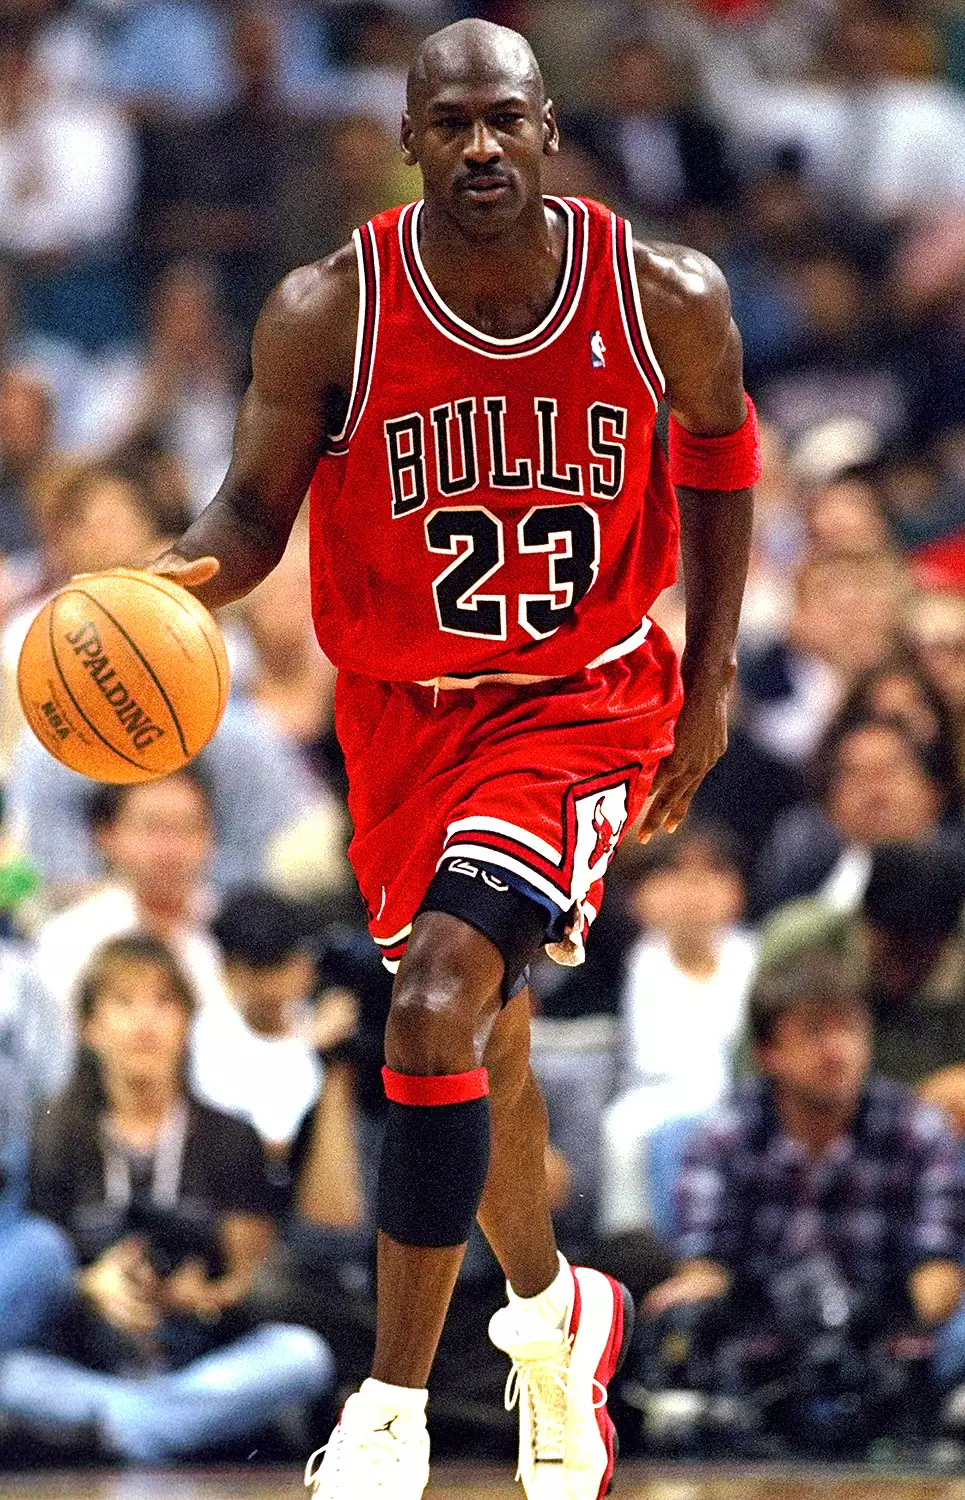  Facts About Michael Jordan